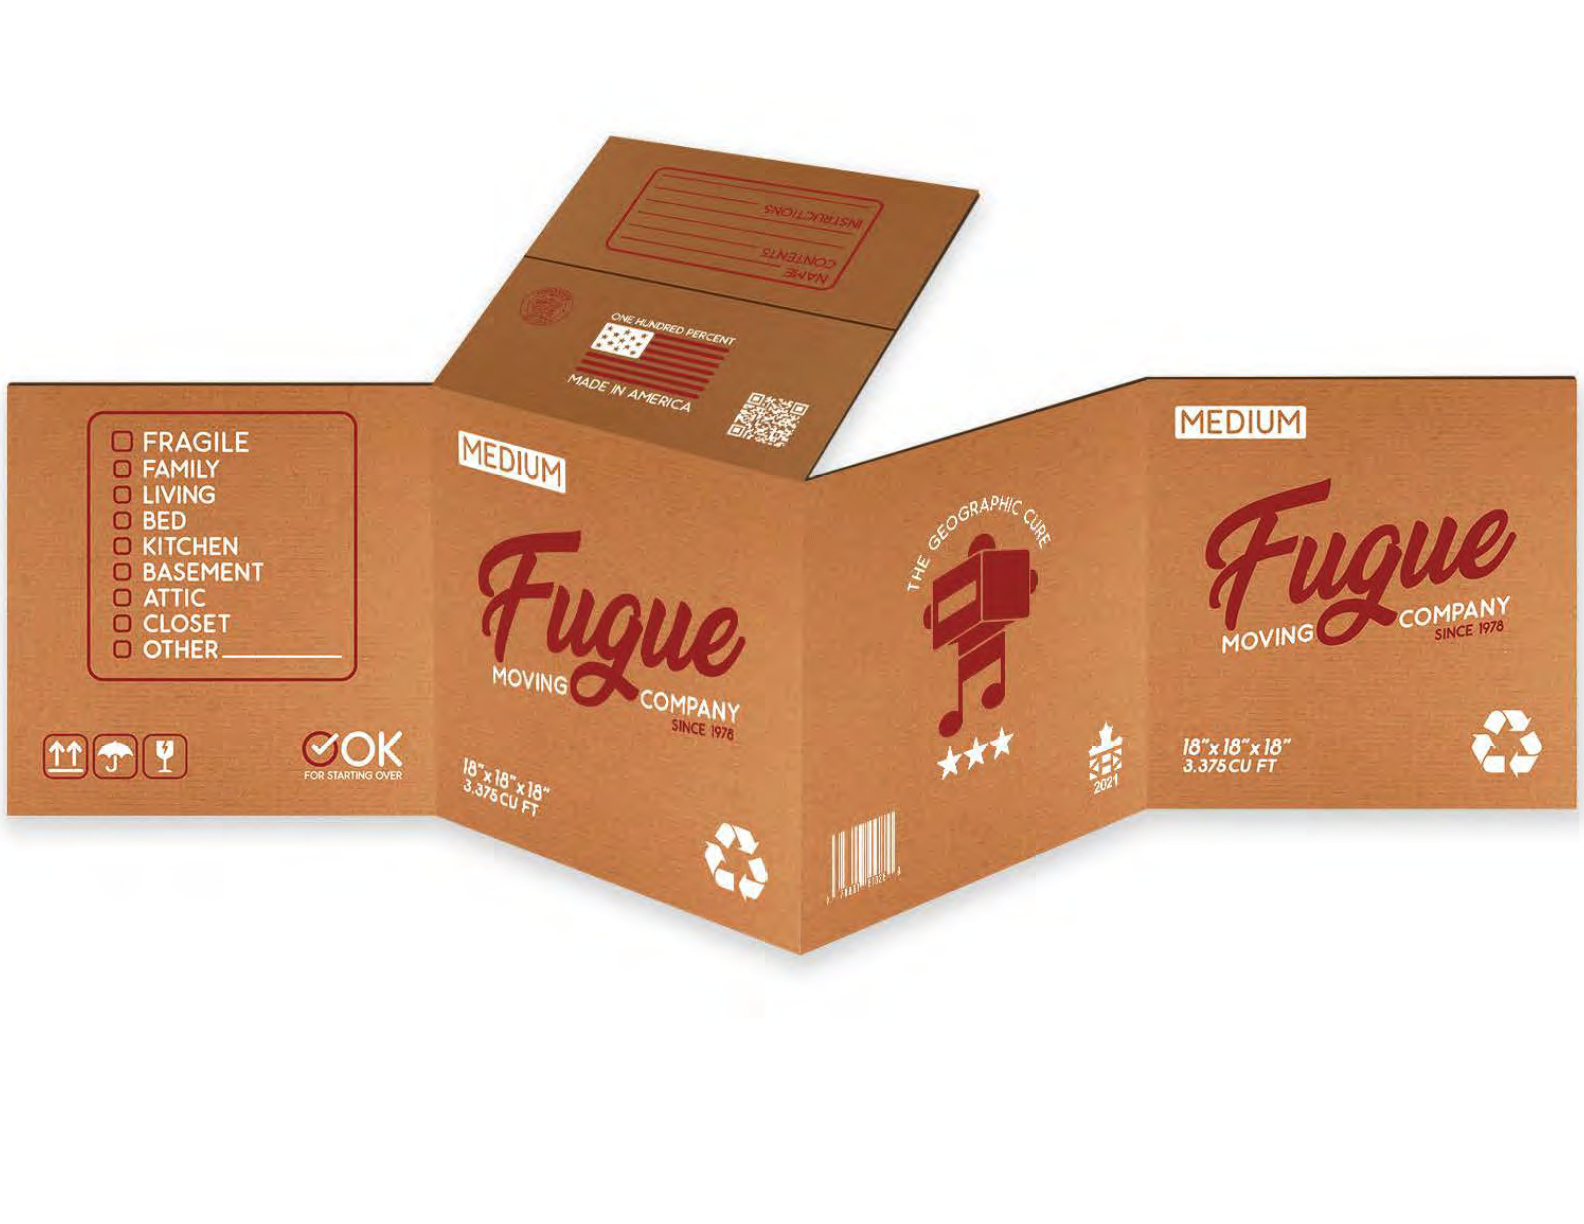  Fugue Box (expanded)